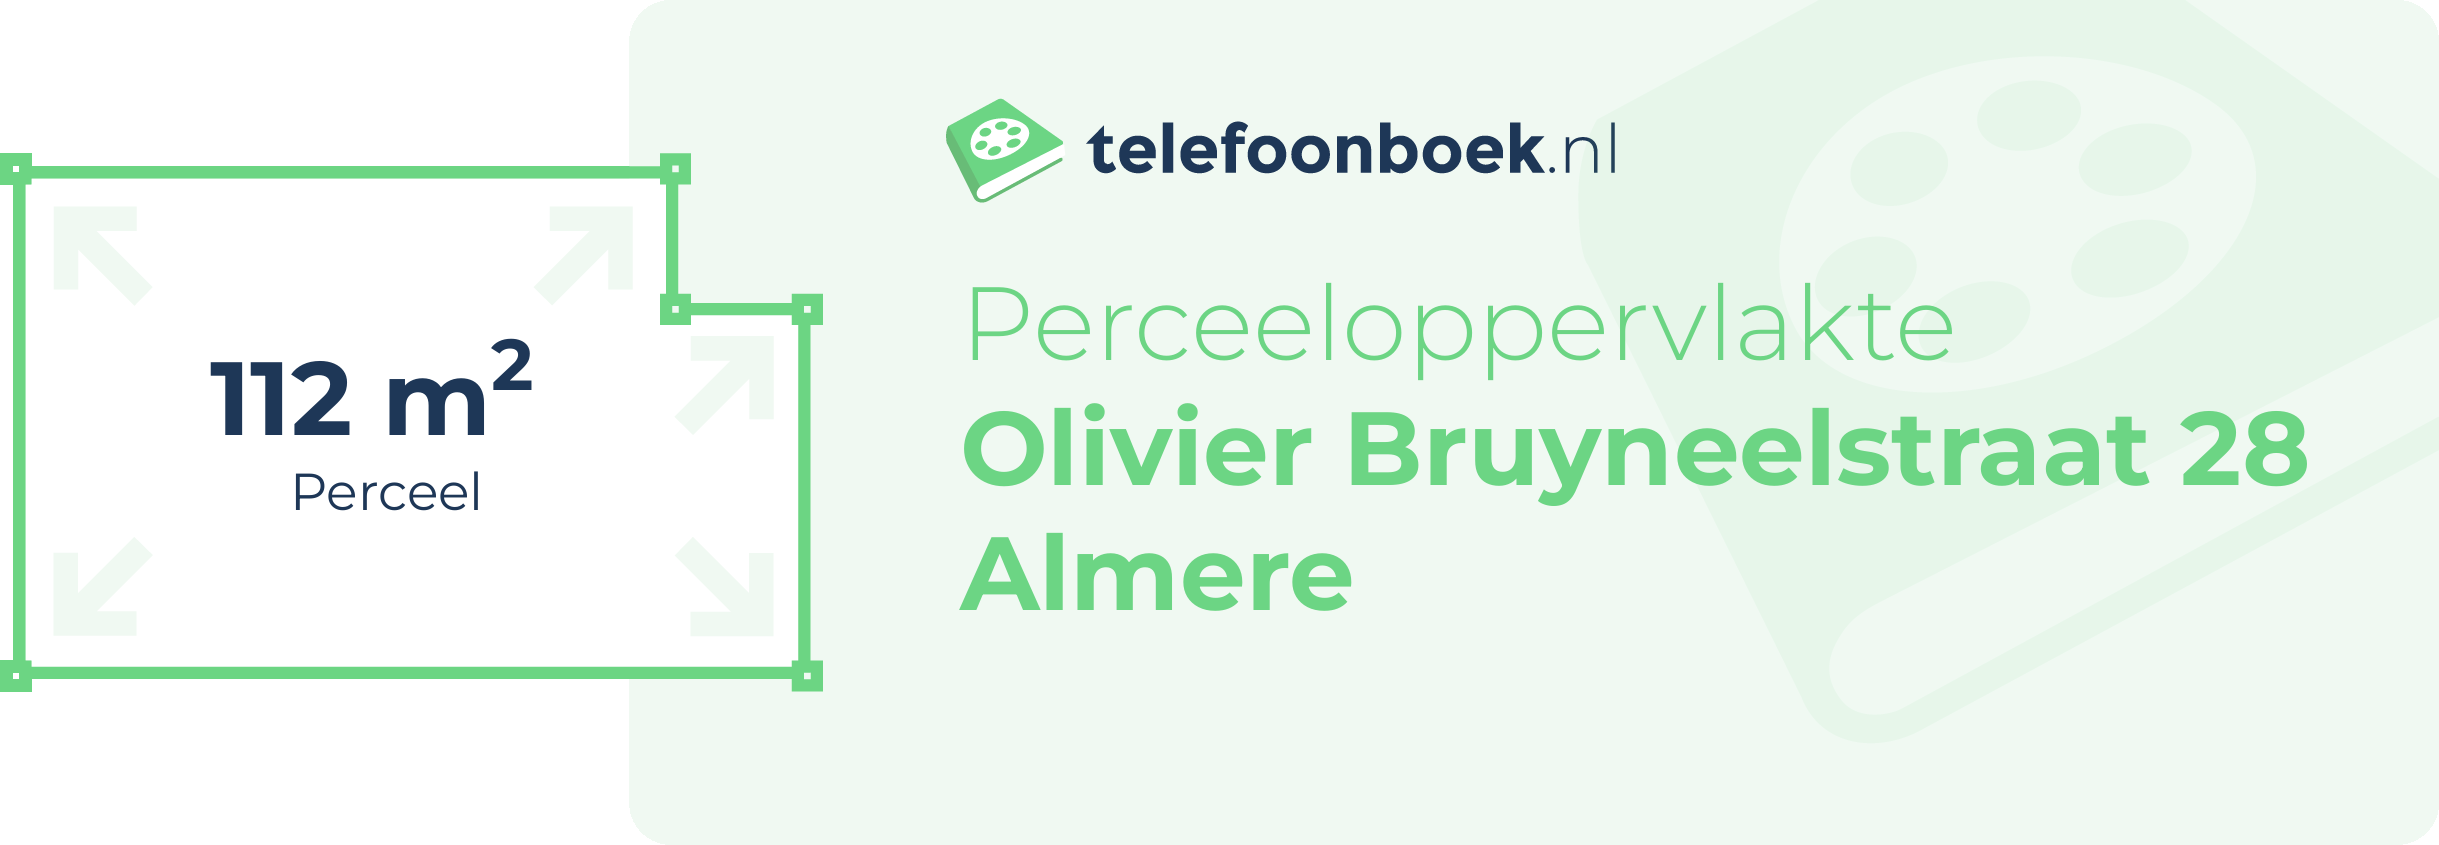 Perceeloppervlakte Olivier Bruyneelstraat 28 Almere